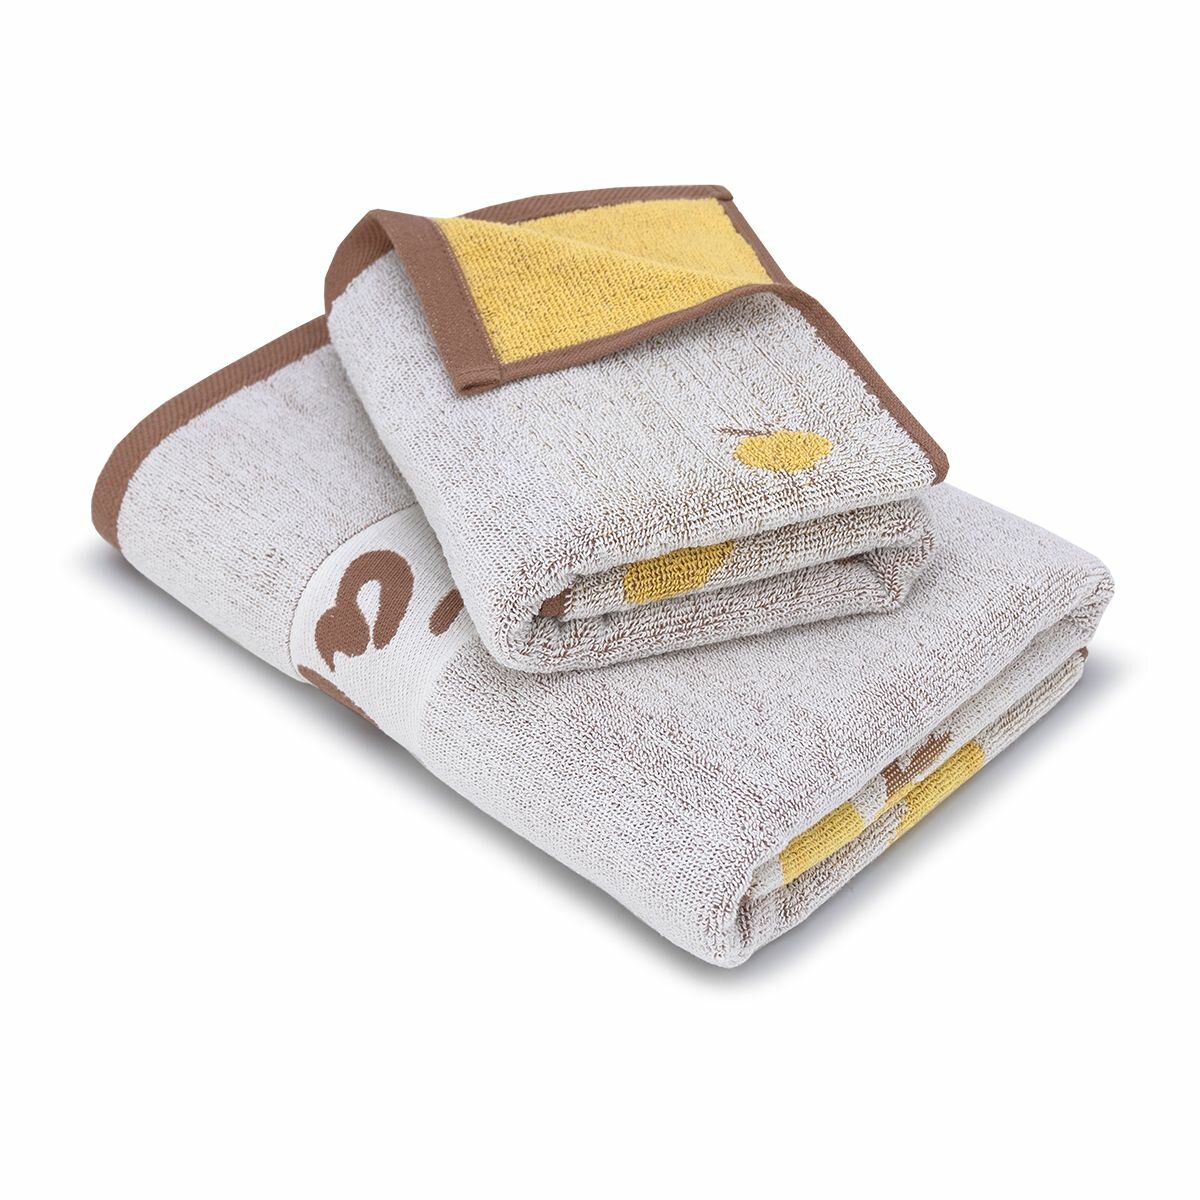 Набор детских полотенец Капибара 50*80 см + 70*130 см, цвет бежевый, полотенце махровое, полотенце банное, набор полотенец подарочный - фотография № 7